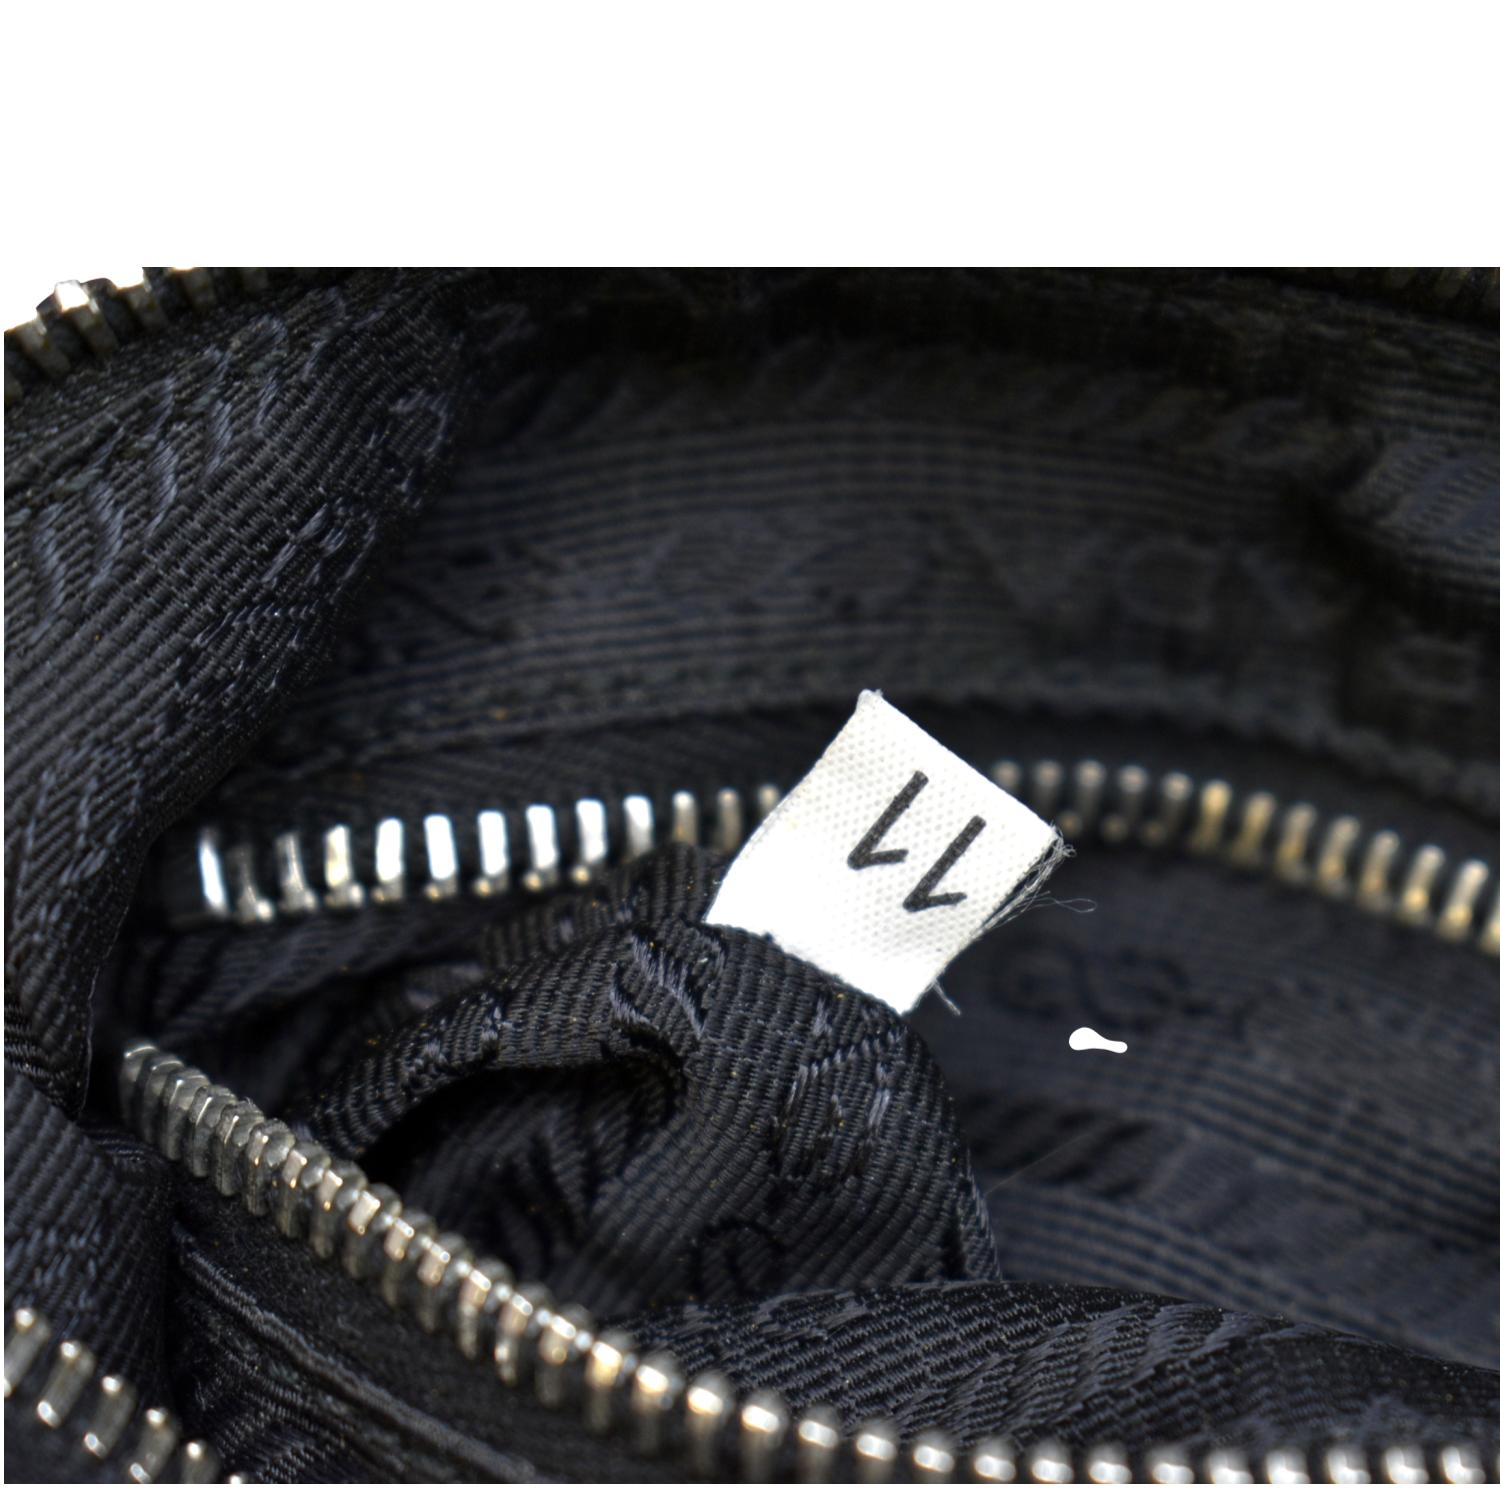  Prada Tessuto Black Nylon Leather Trim Shopping Tote